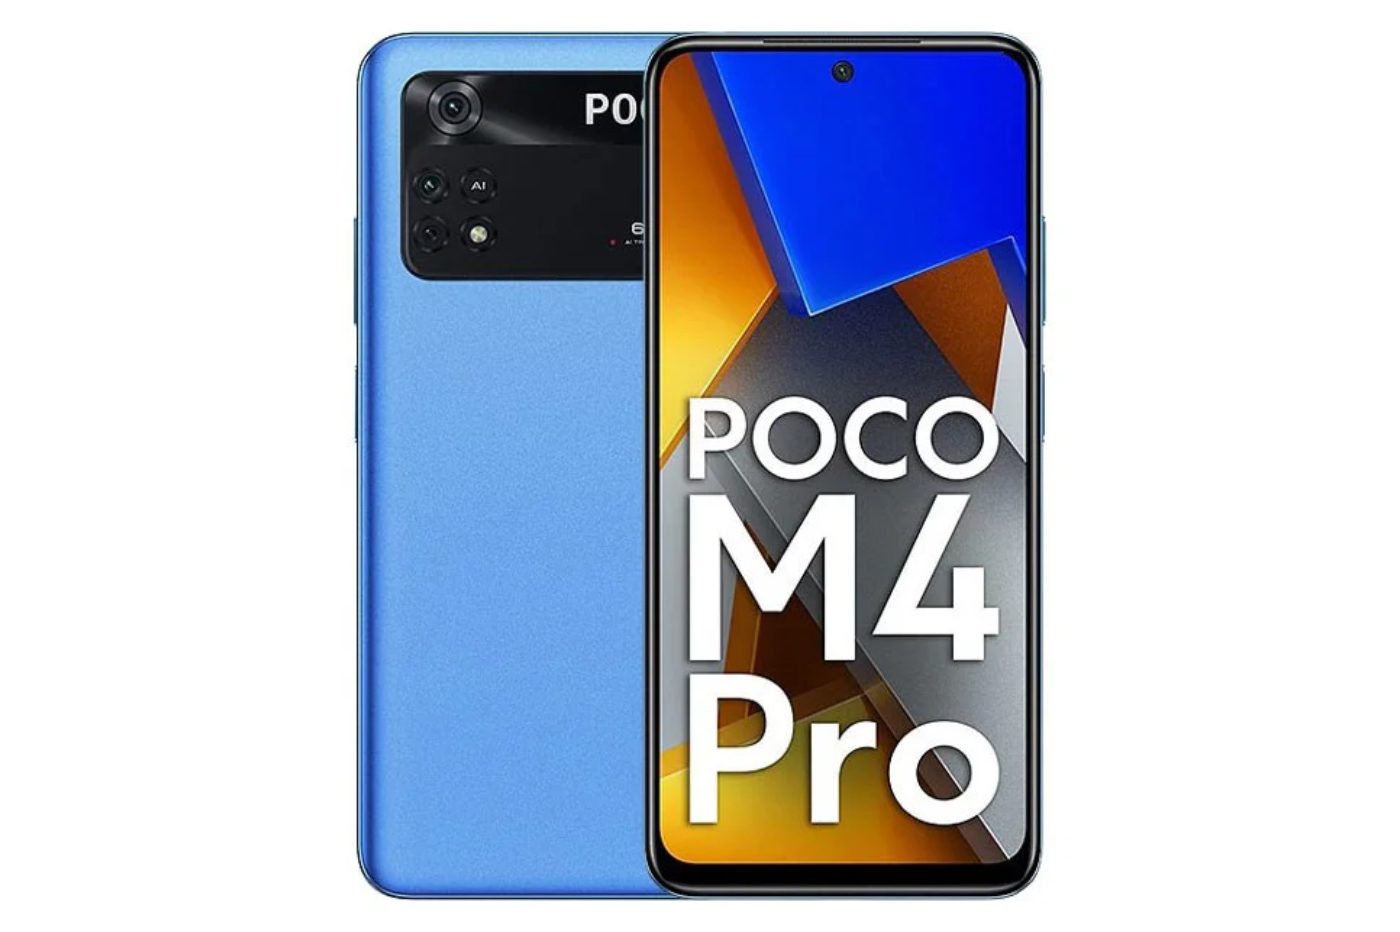 Bon plan smartphone pas cher : 30% de réduction sur le reconnu POCO M4 Pro  - Le Parisien